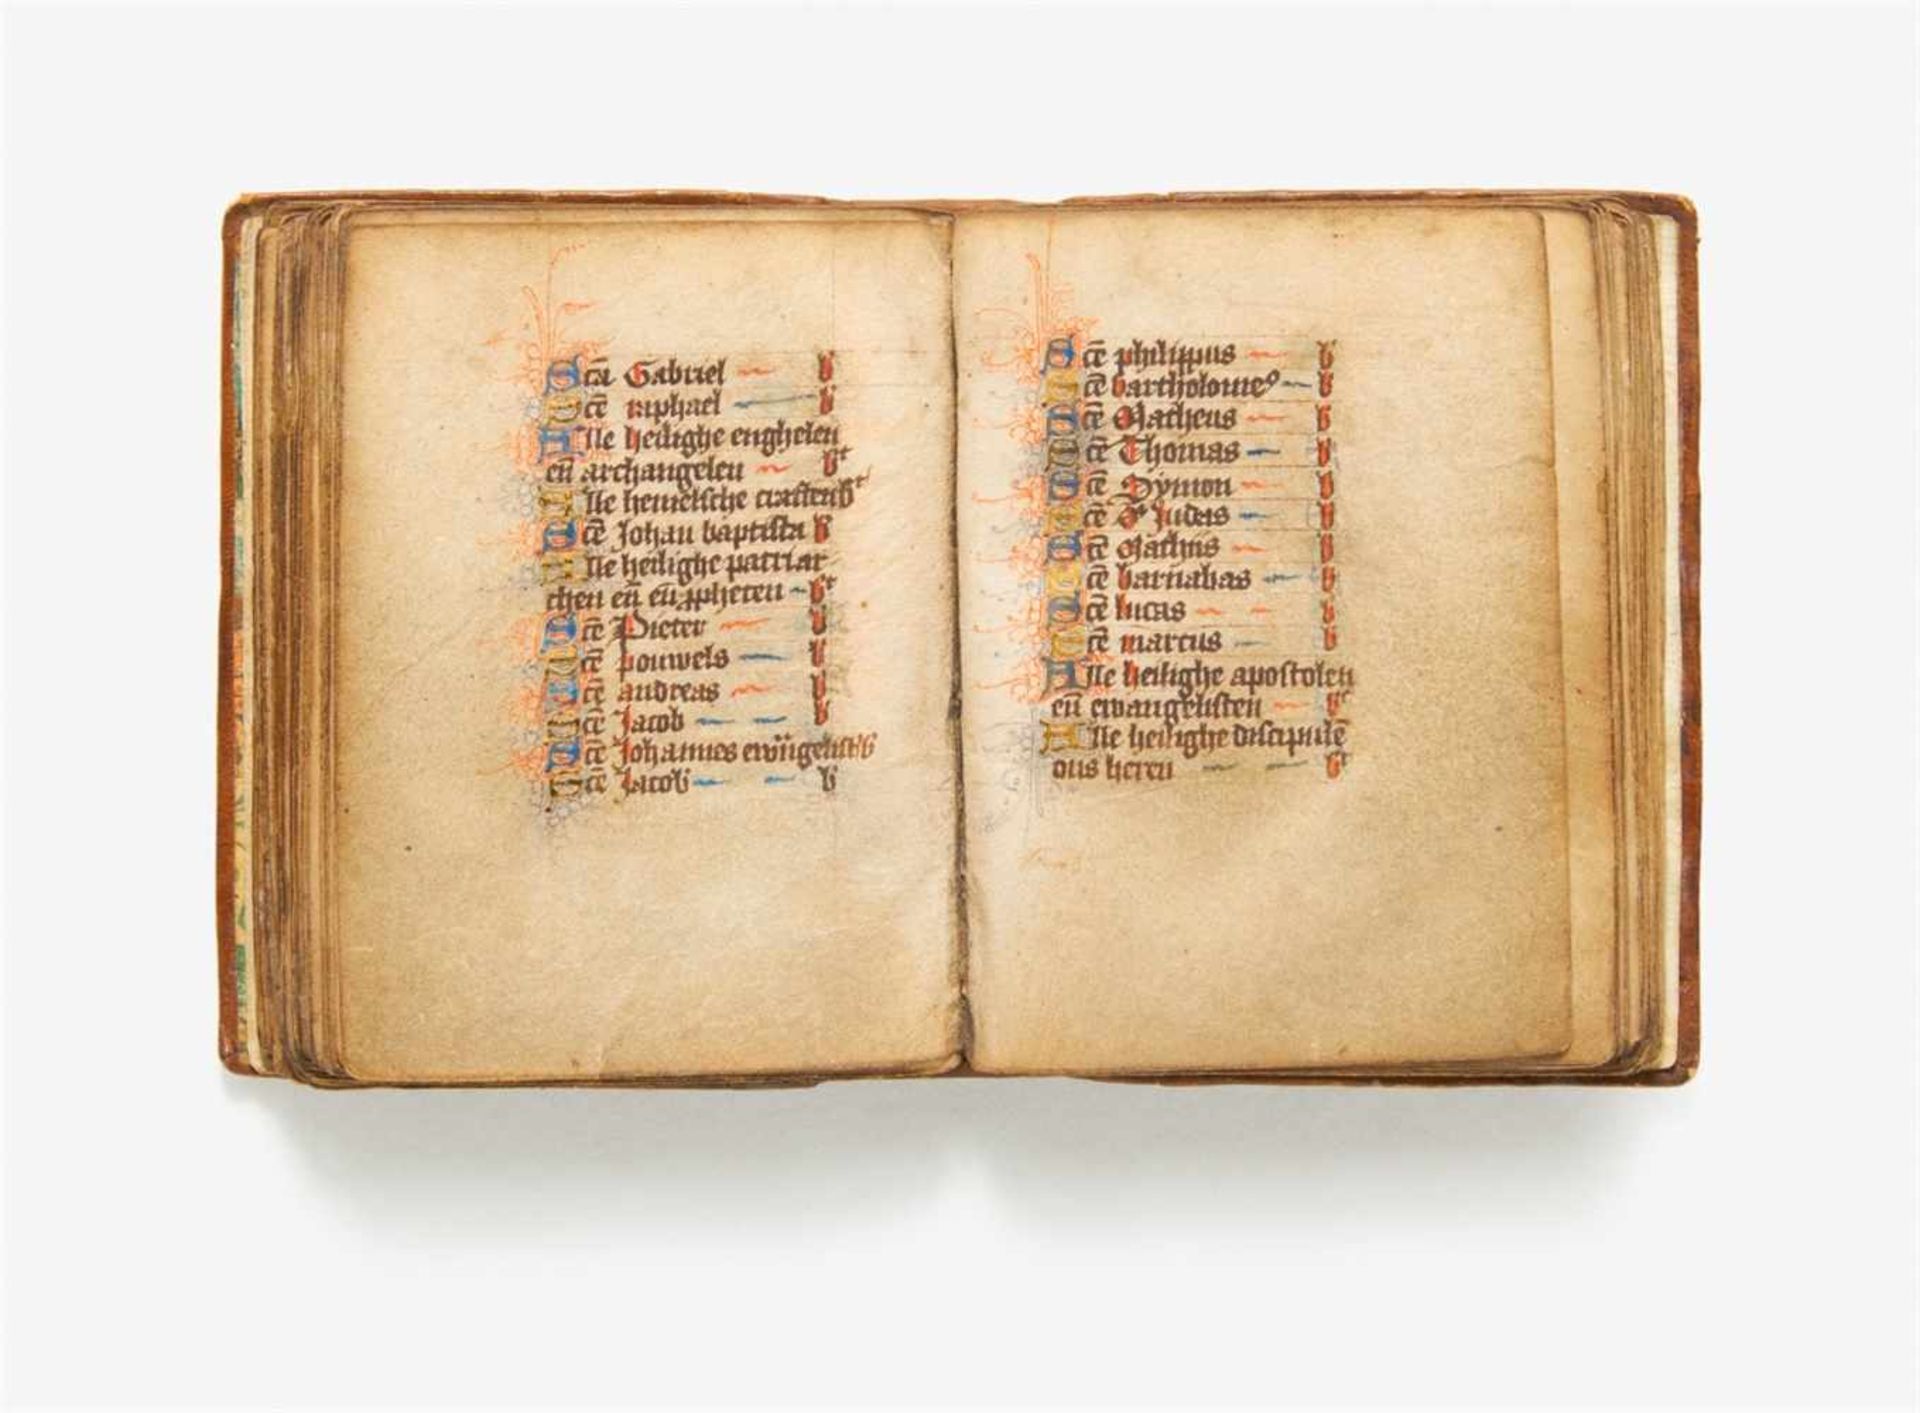 Getijdenboek. - Niederländisches Stundenbuch. Handschrift auf Pergament. Wohl nördliche Niederlande, - Image 3 of 3